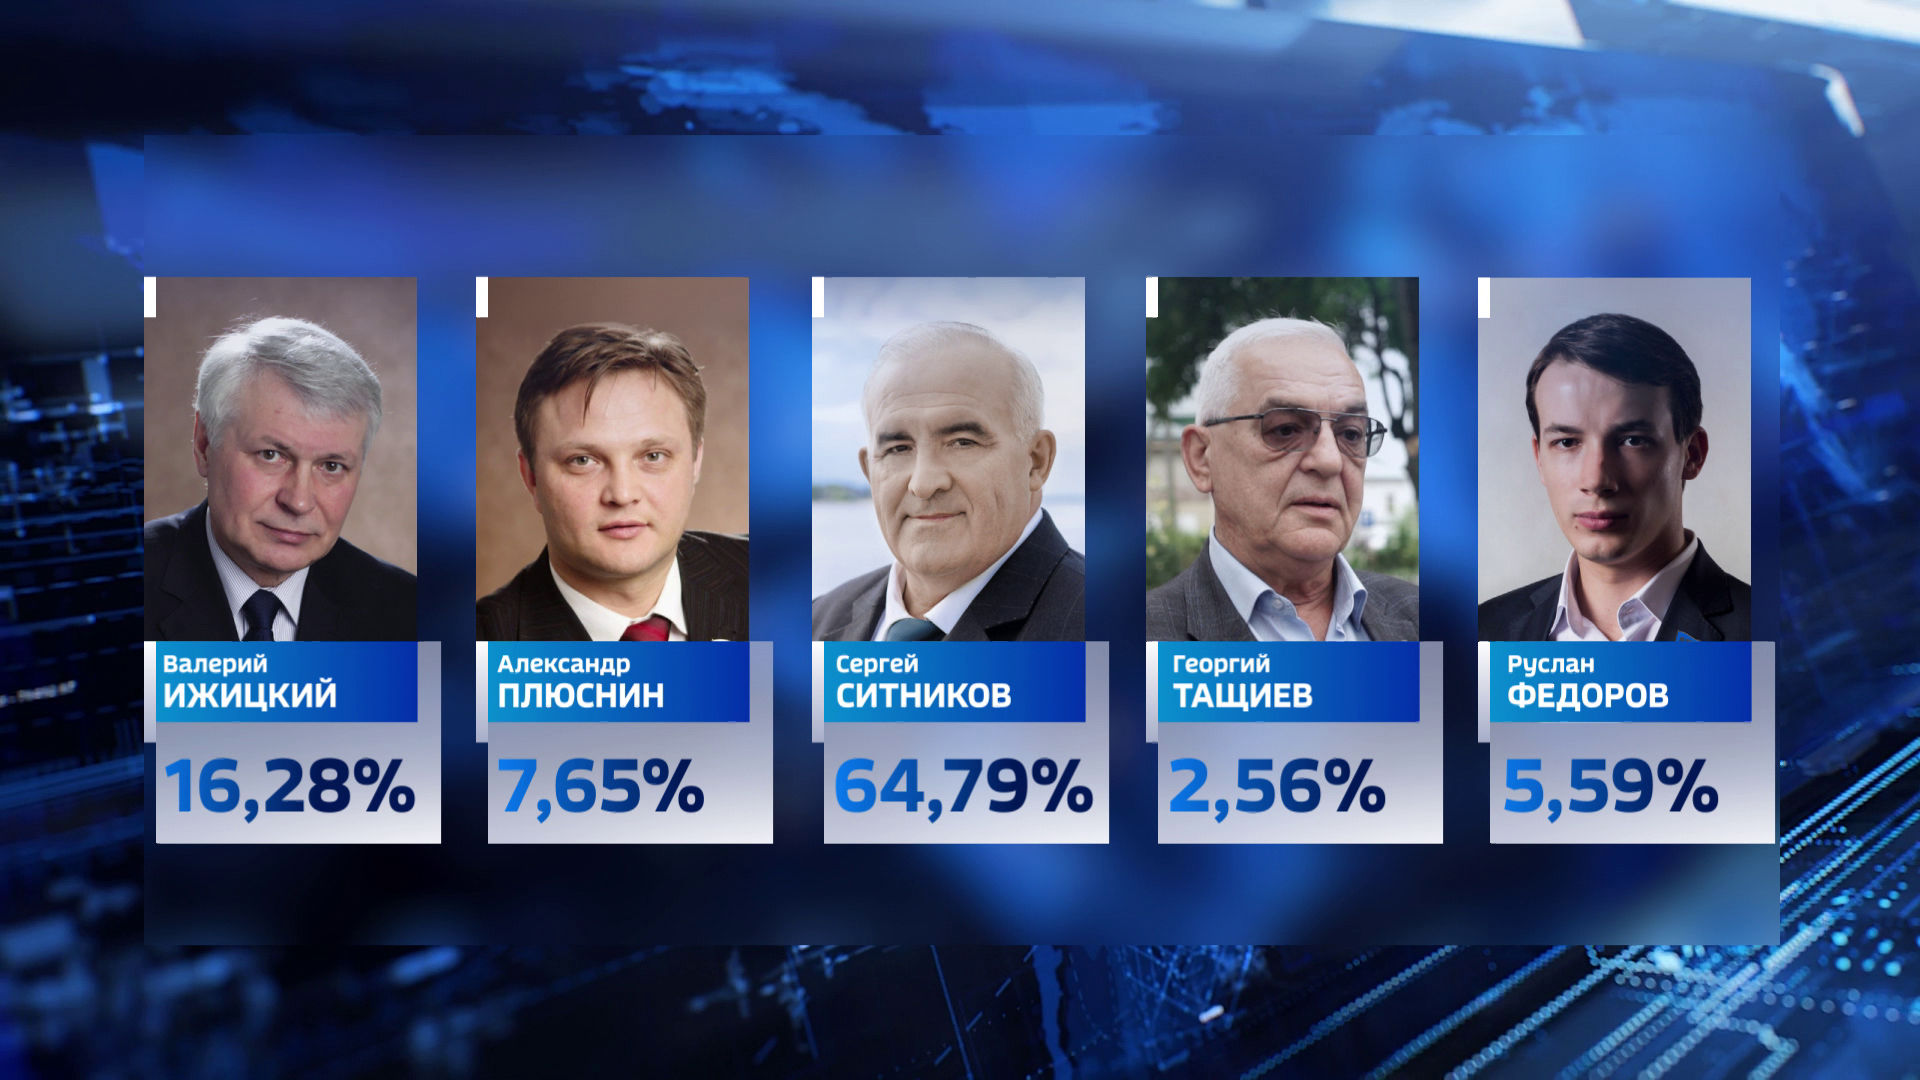 Результаты выборов в костромской области. Выборы губернатора Костромской области.